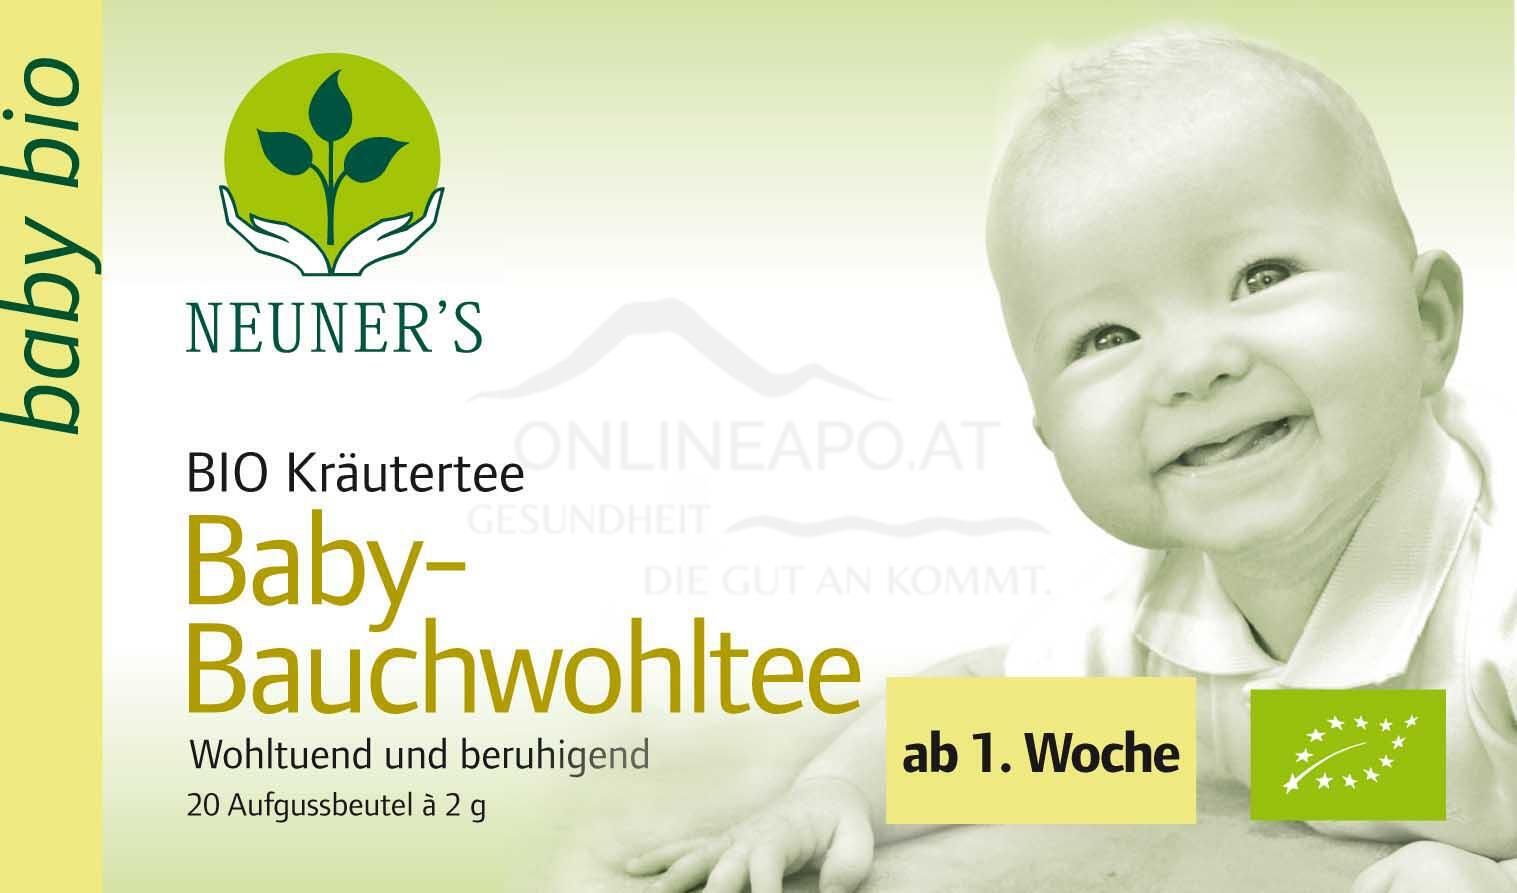 Neuner''s	Baby-Bauchwohltee BIO